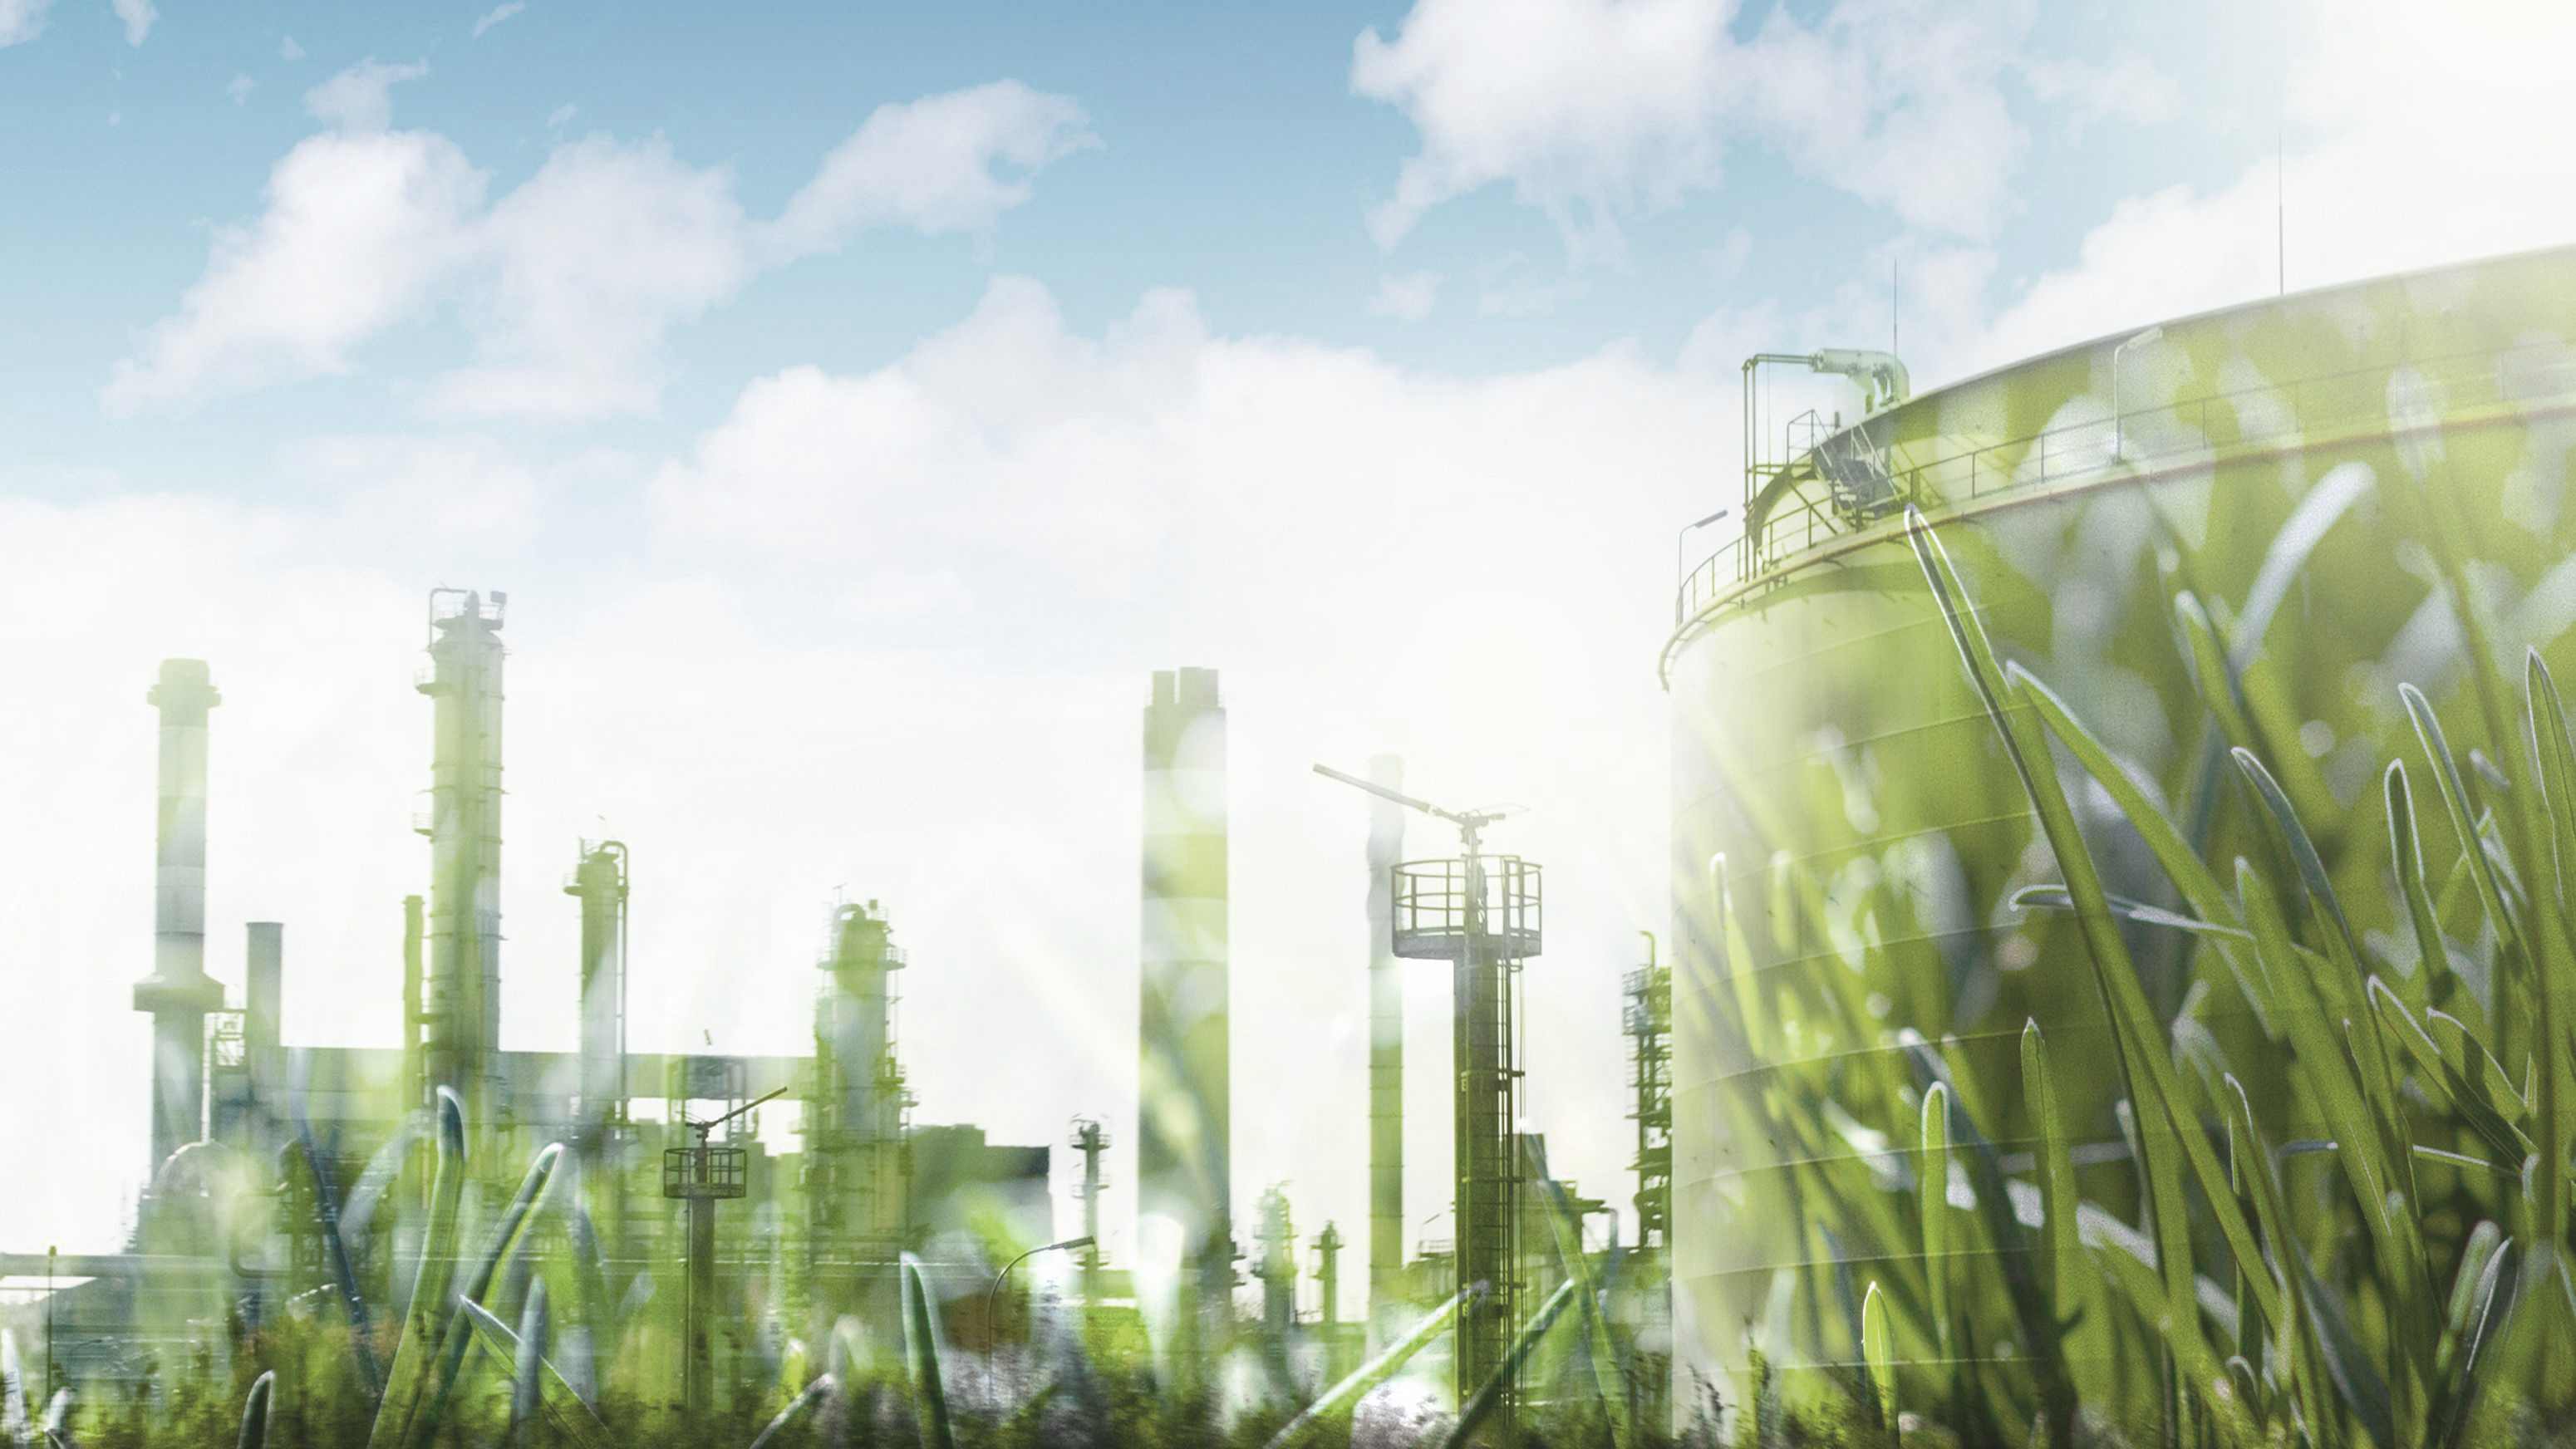 illustration med gräs och fabrik i bakgrunden mot blå himmel 